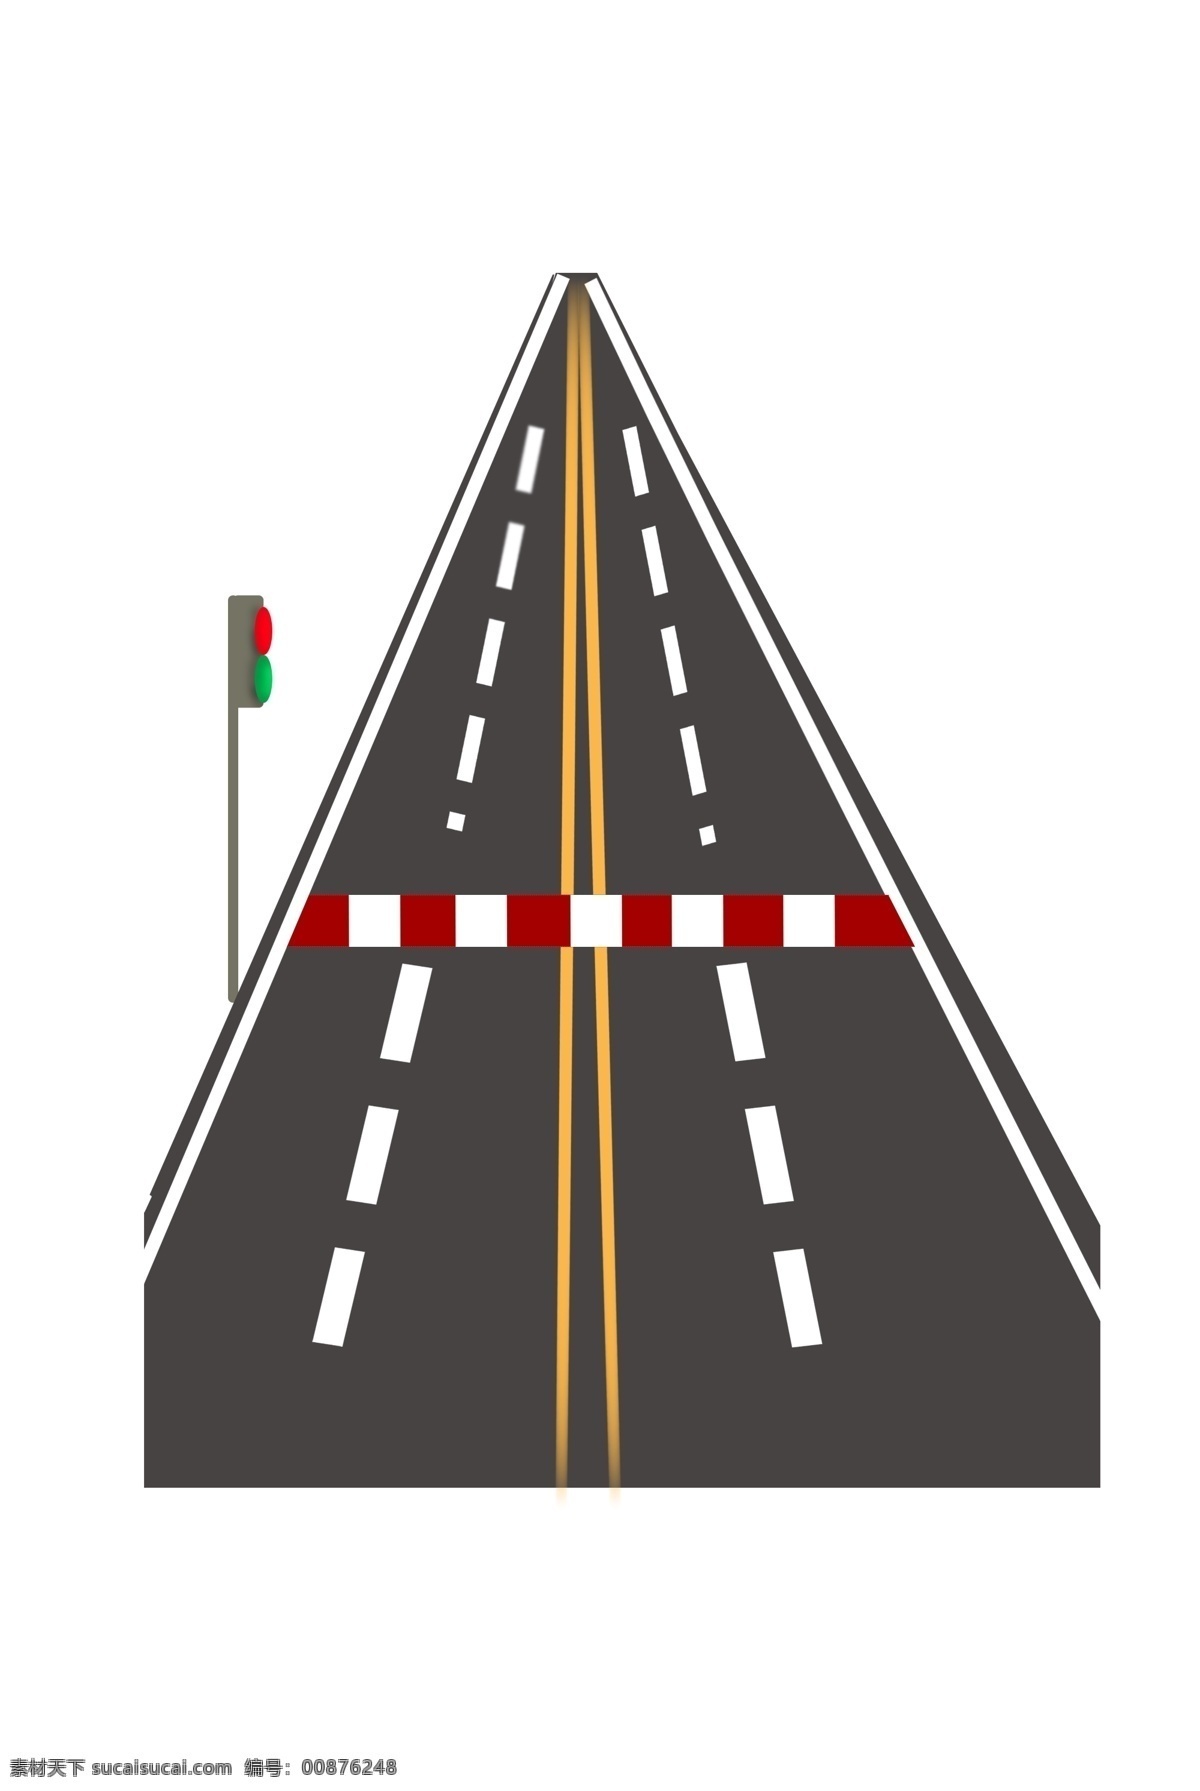 红绿灯 高速公路 插图 红色杆子 红灯 绿灯 高速公路图案 广告插画 精美插画 图案装饰 山路 山道 公路